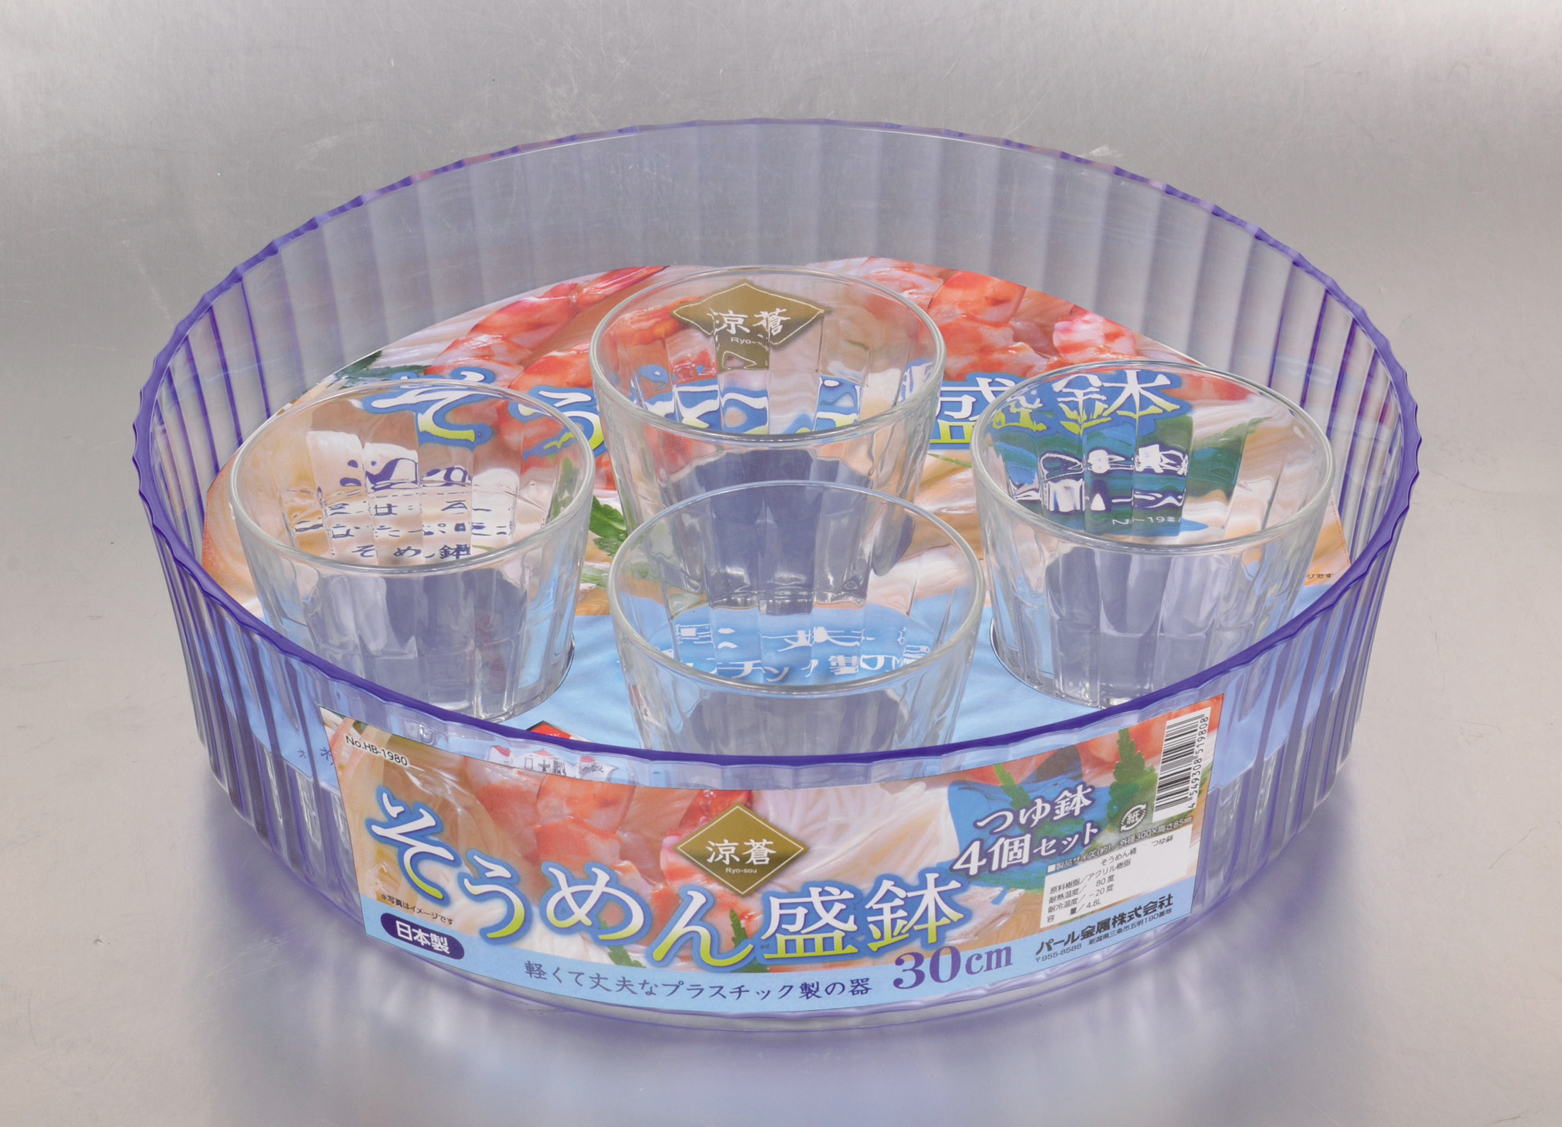 パール金属 涼蒼 NEW そうめん盛鉢 スーパーSALE セール期間限定 つゆ鉢 そうめん皿 4個セット 日本製